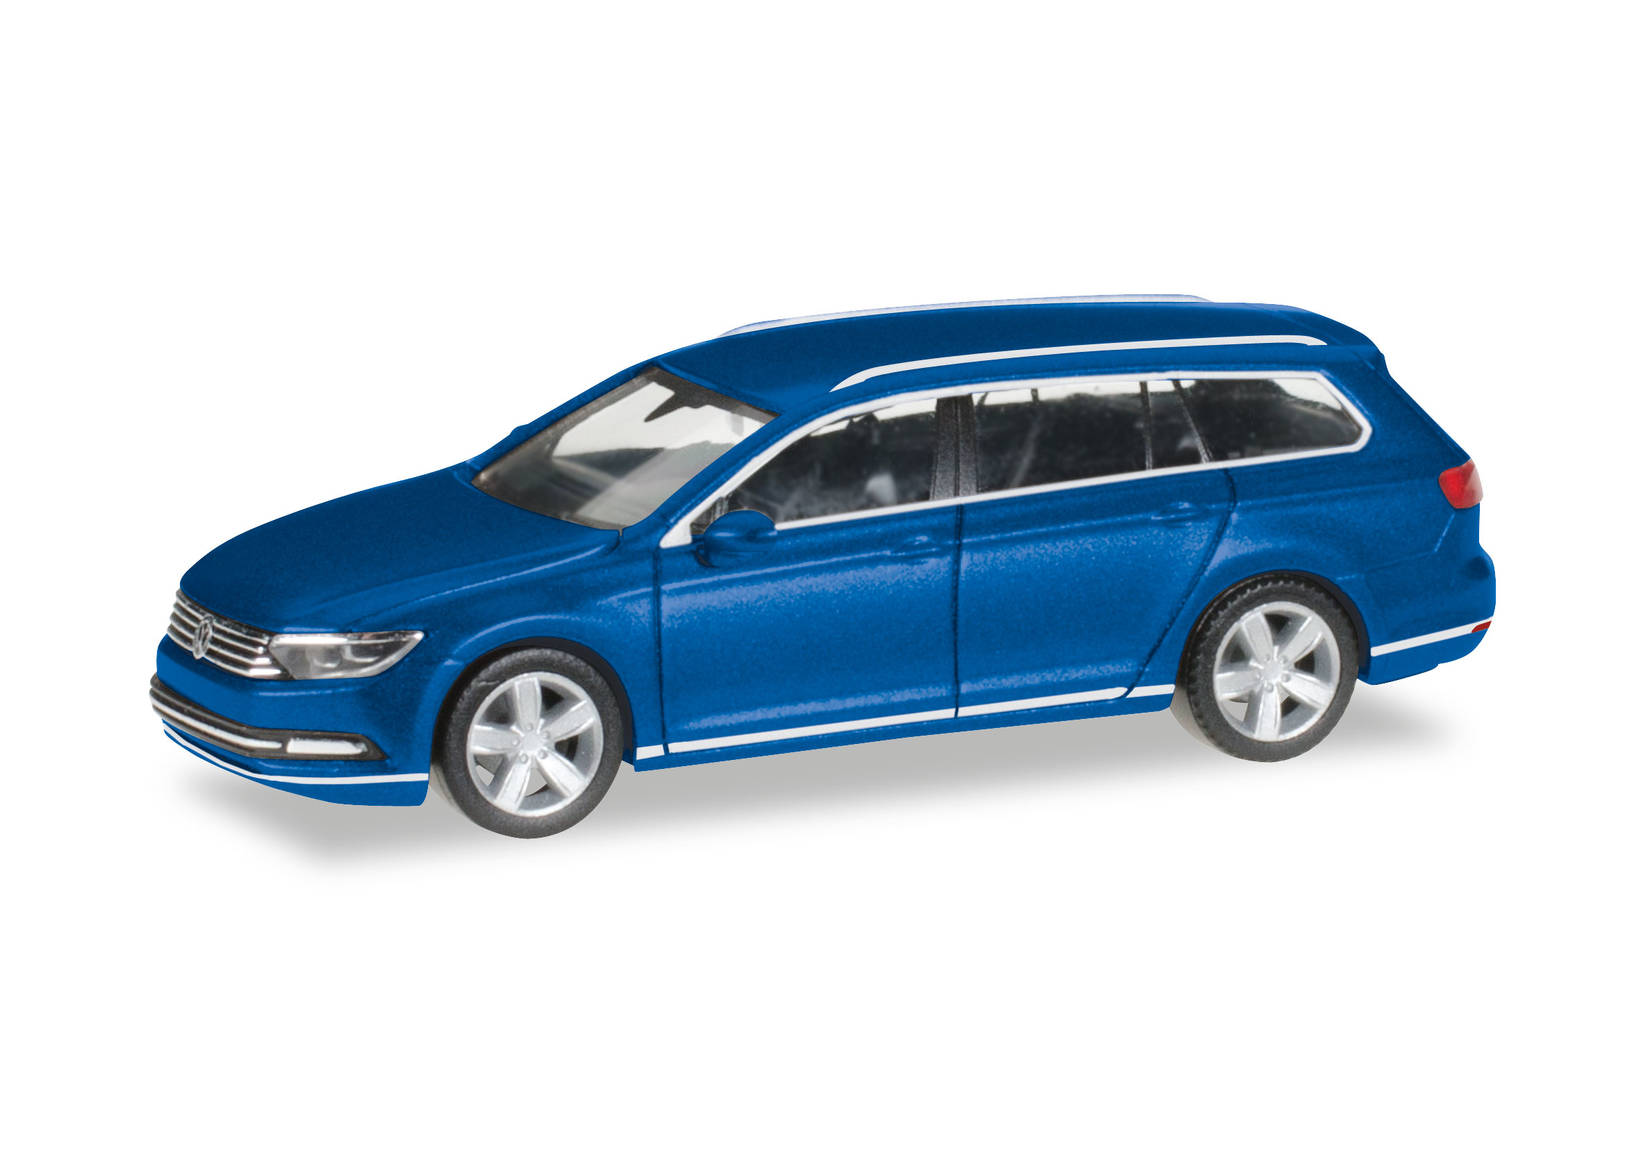 VW Passat Variant, atlanticblau metallic